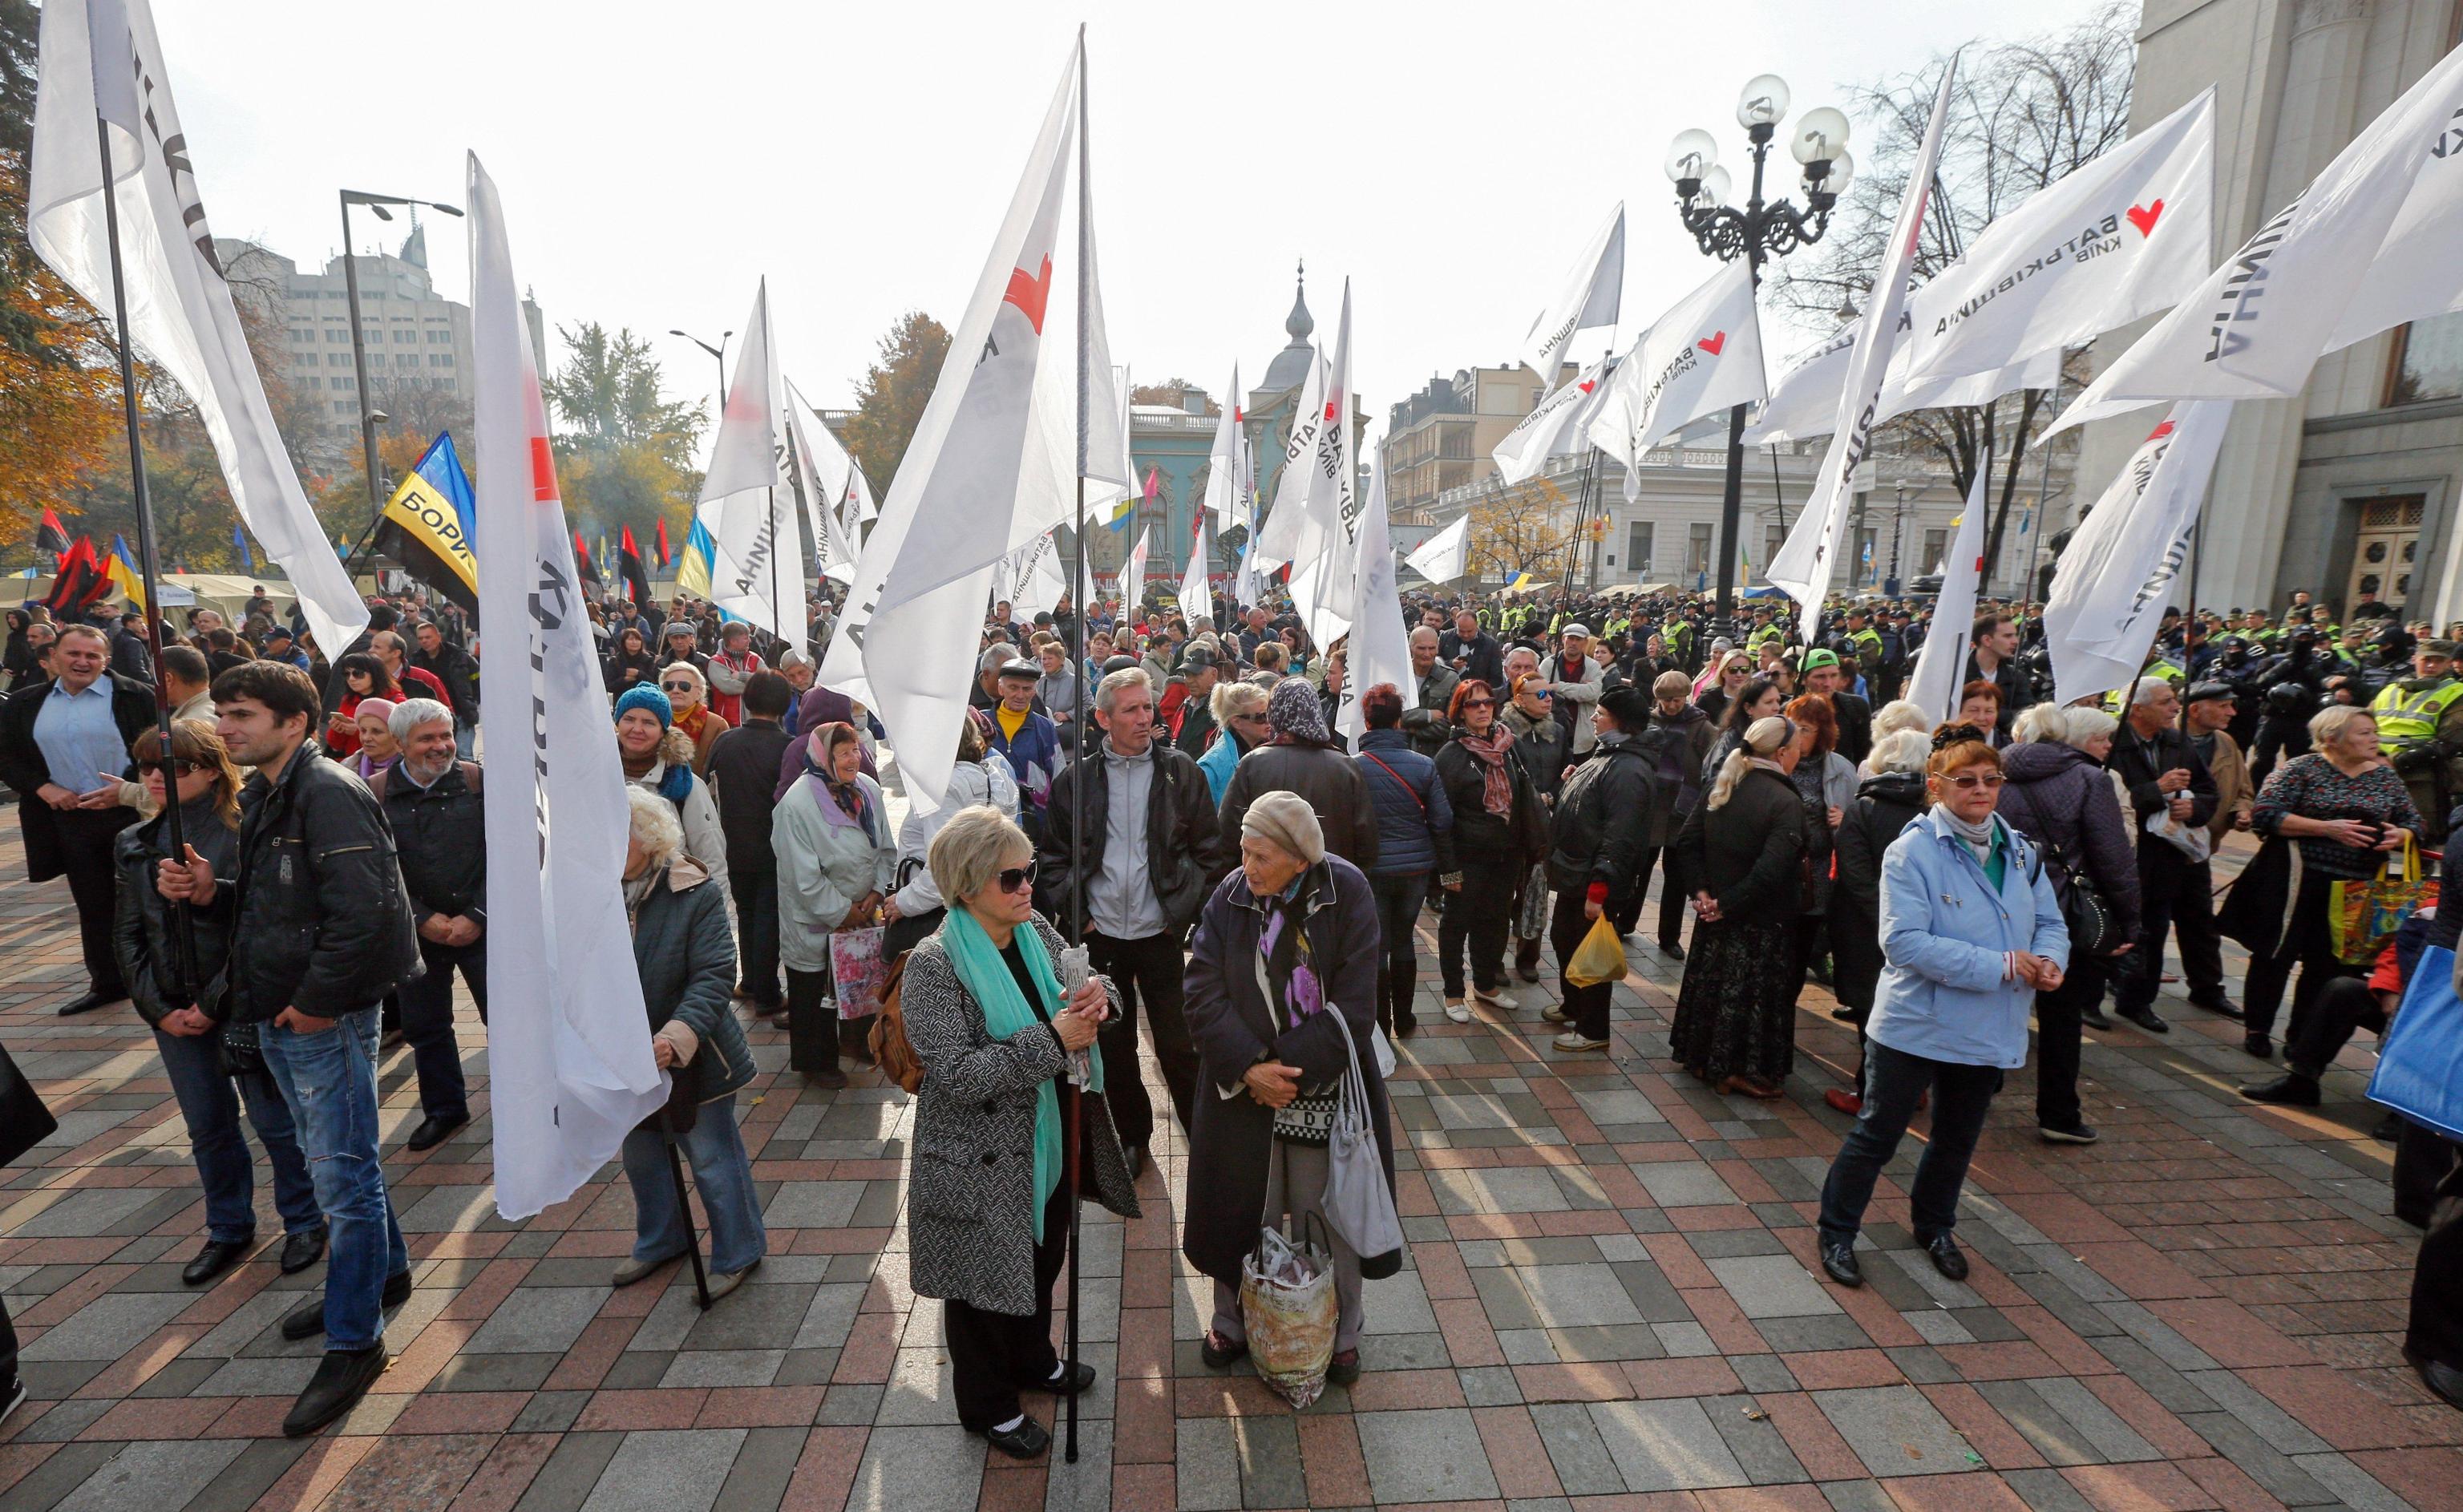 Un mare di bandiere, di ogni partito e associazione. Questa è una contestazione che coinvolge tutto il popolo ucraino